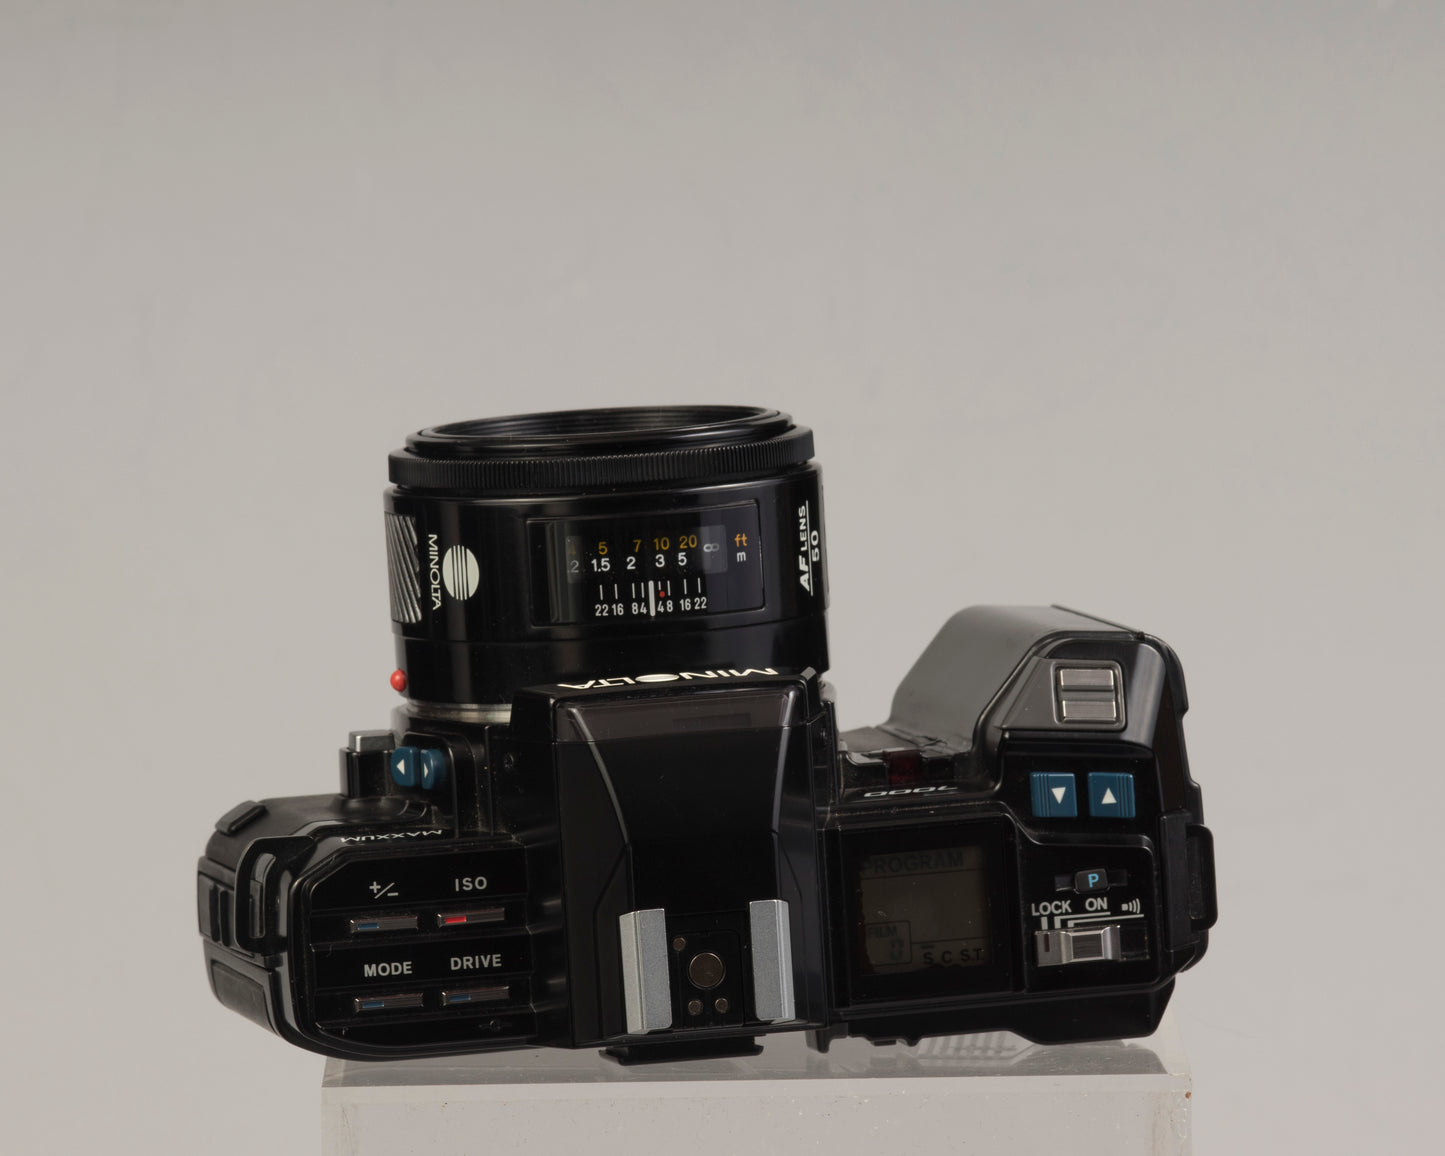 Minolta Maxxum 7000 35mm film SLR